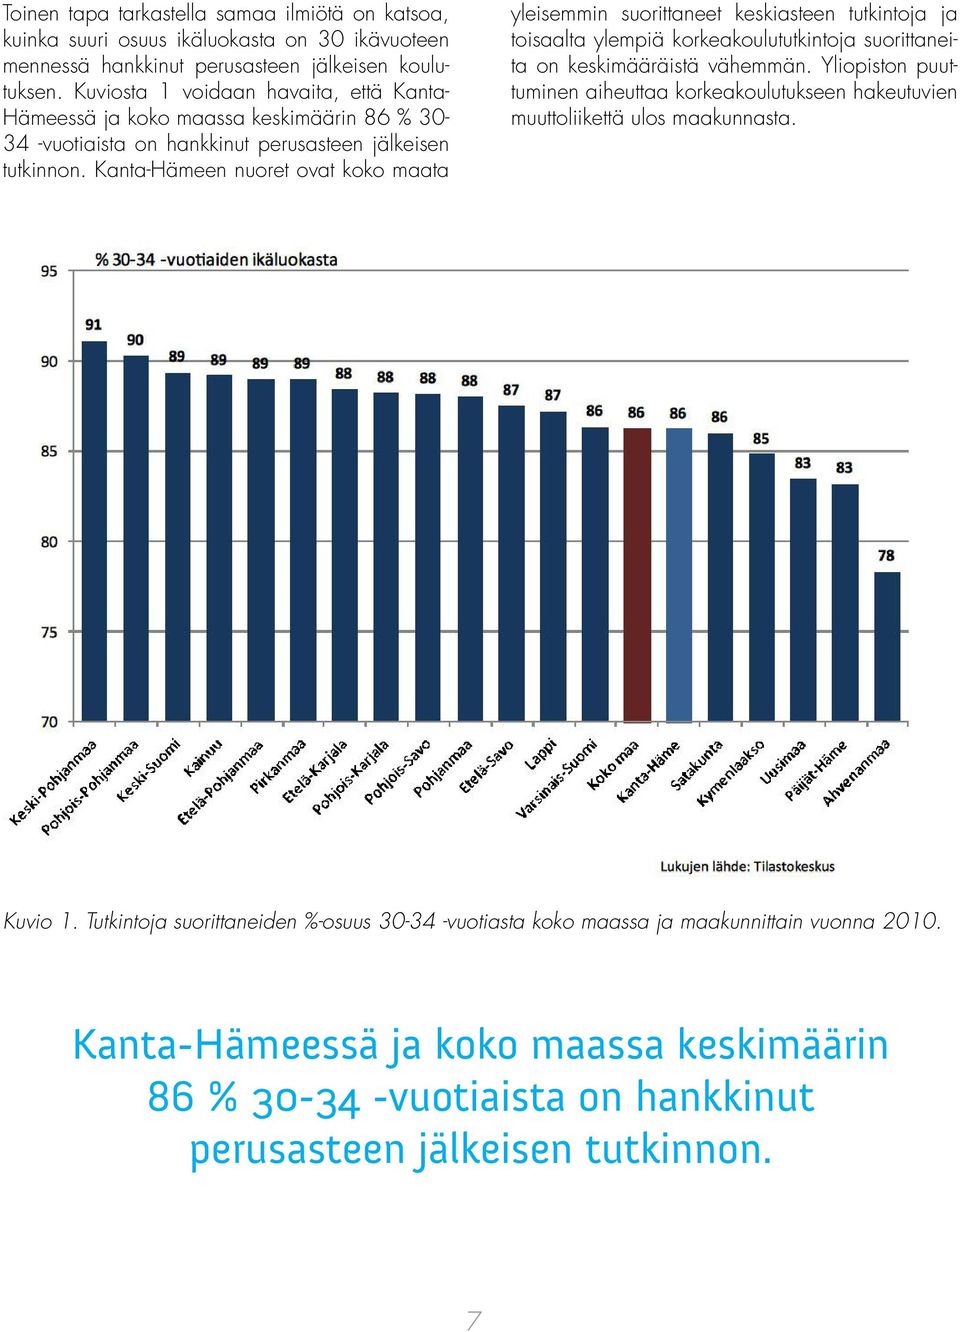 Kanta-Hämeen nuoret ovat koko maata yleisemmin suorittaneet keskiasteen tutkintoja ja toisaalta ylempiä korkeakoulututkintoja suorittaneita on keskimääräistä vähemmän.